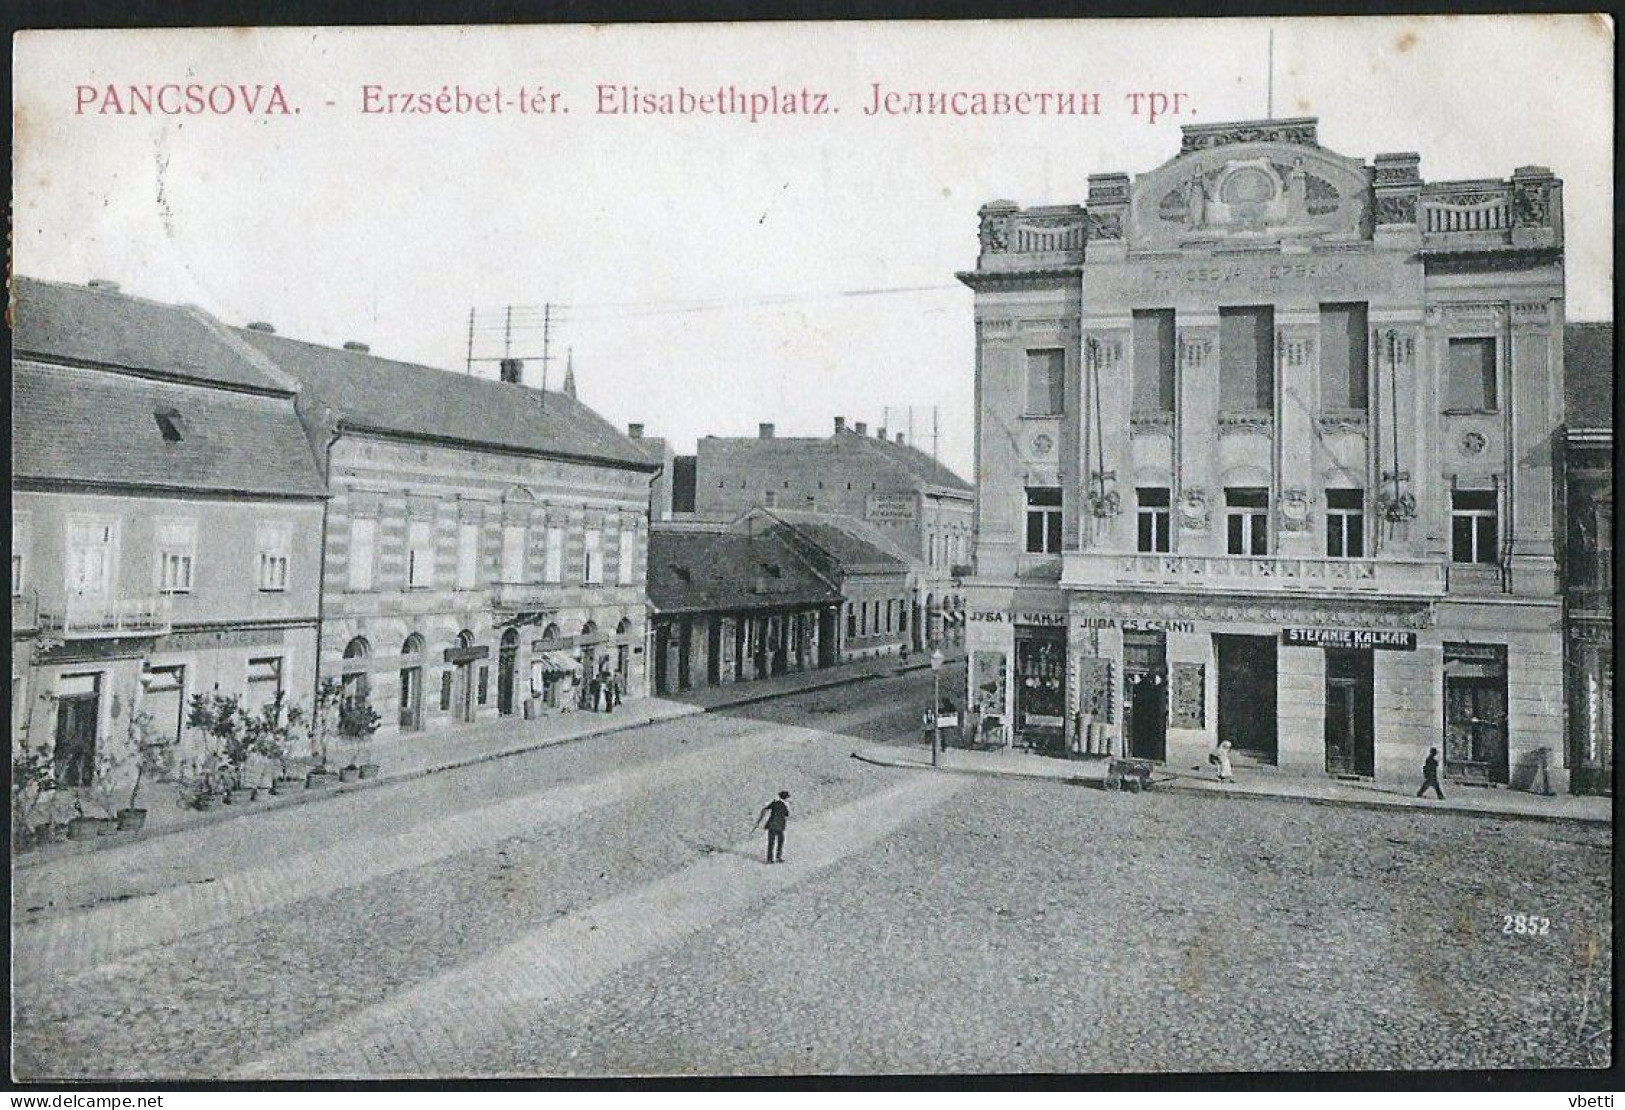 Serbia / Hungary: Pancsova (Pančevo / Pantschowa / Panciova), Erzsébet-tér / Elisabethplatz  1908 - Serbia